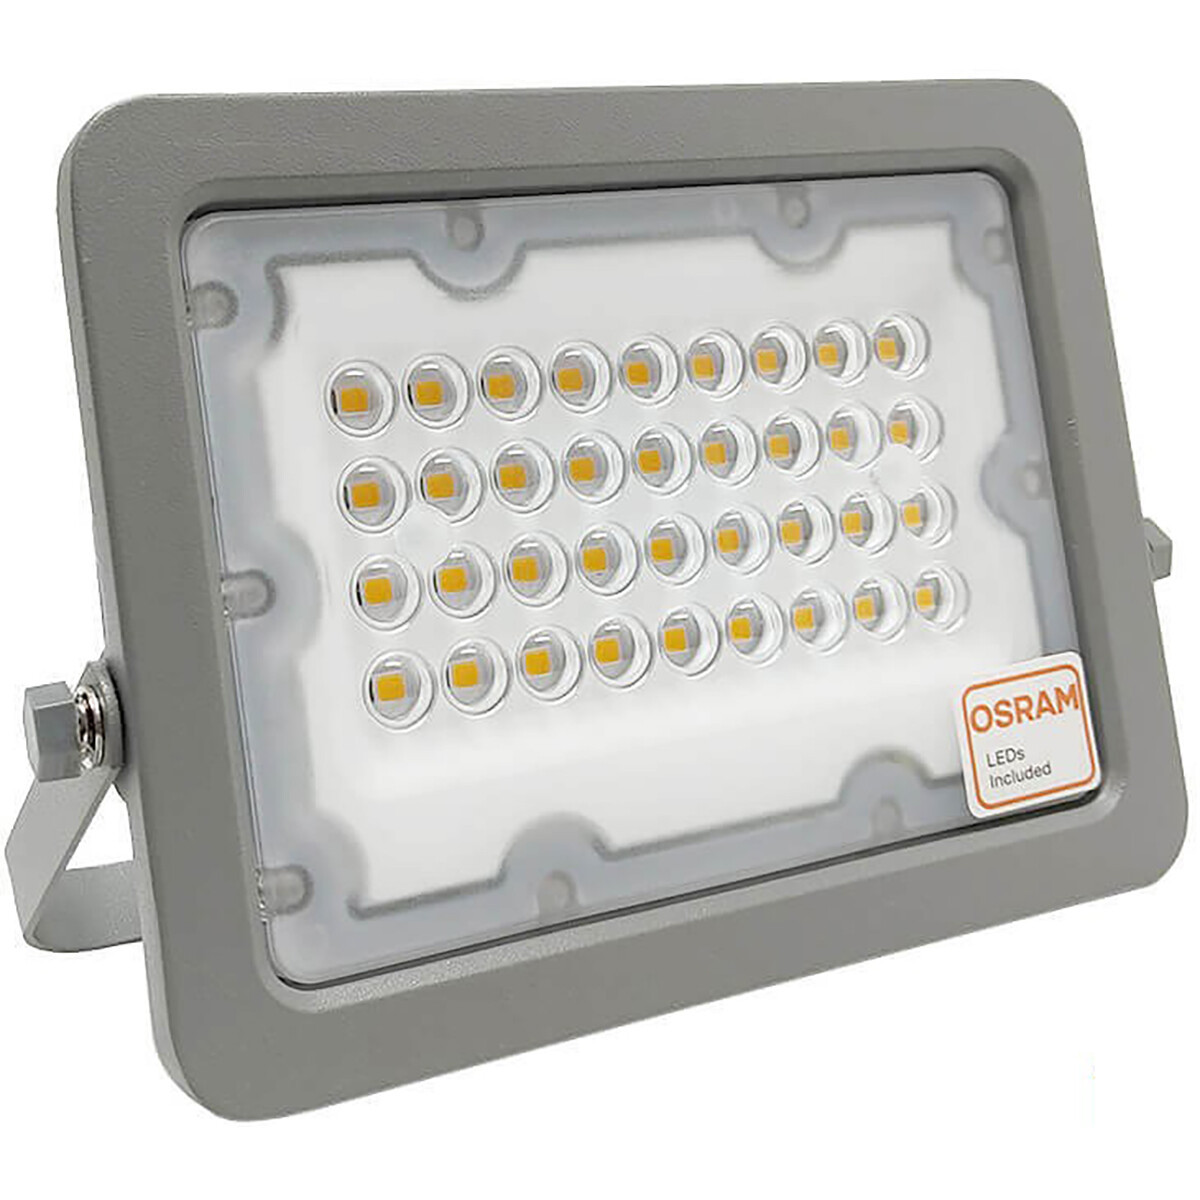 LED Bouwlamp - Facto Dary - 30 Watt - LED Schijnwerper - Helder/Koud Wit 6000K - Waterdicht IP65 - 120LM/W - Flikkervrij - OSRAM LEDs